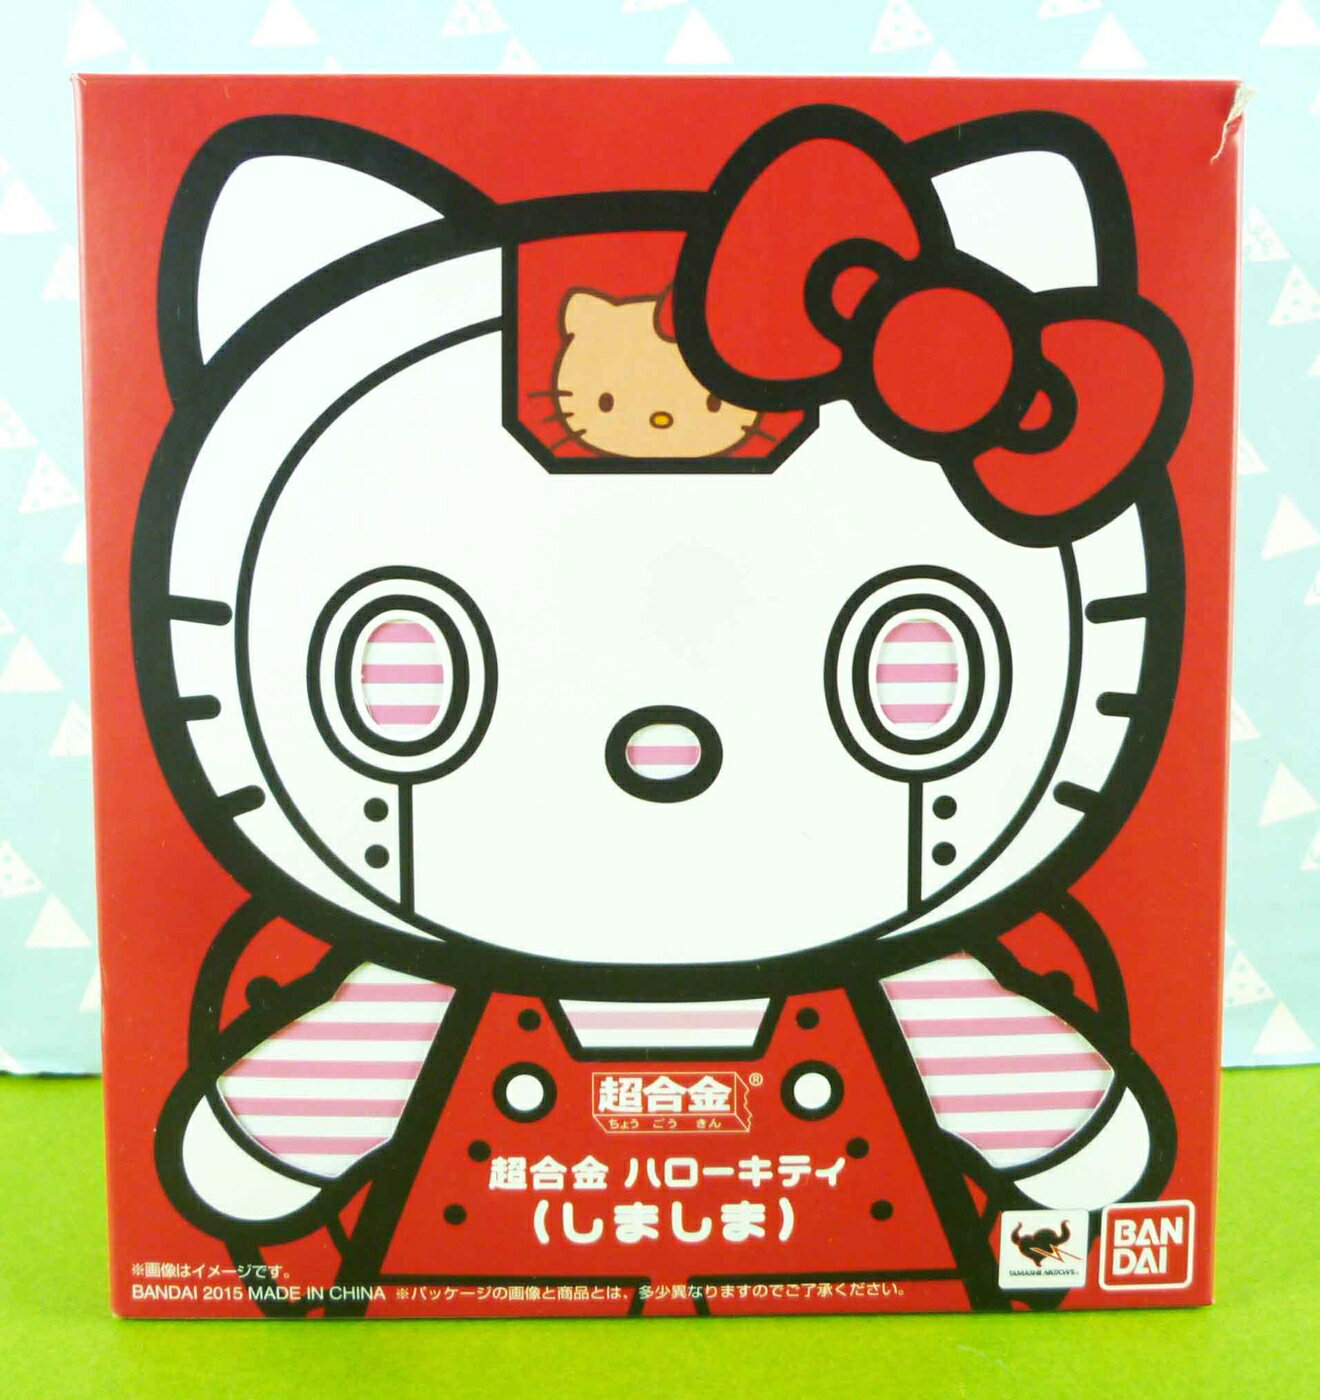 【震撼精品百貨】Hello Kitty 凱蒂貓 限量超合金公仔 紅色款 震撼日式精品百貨